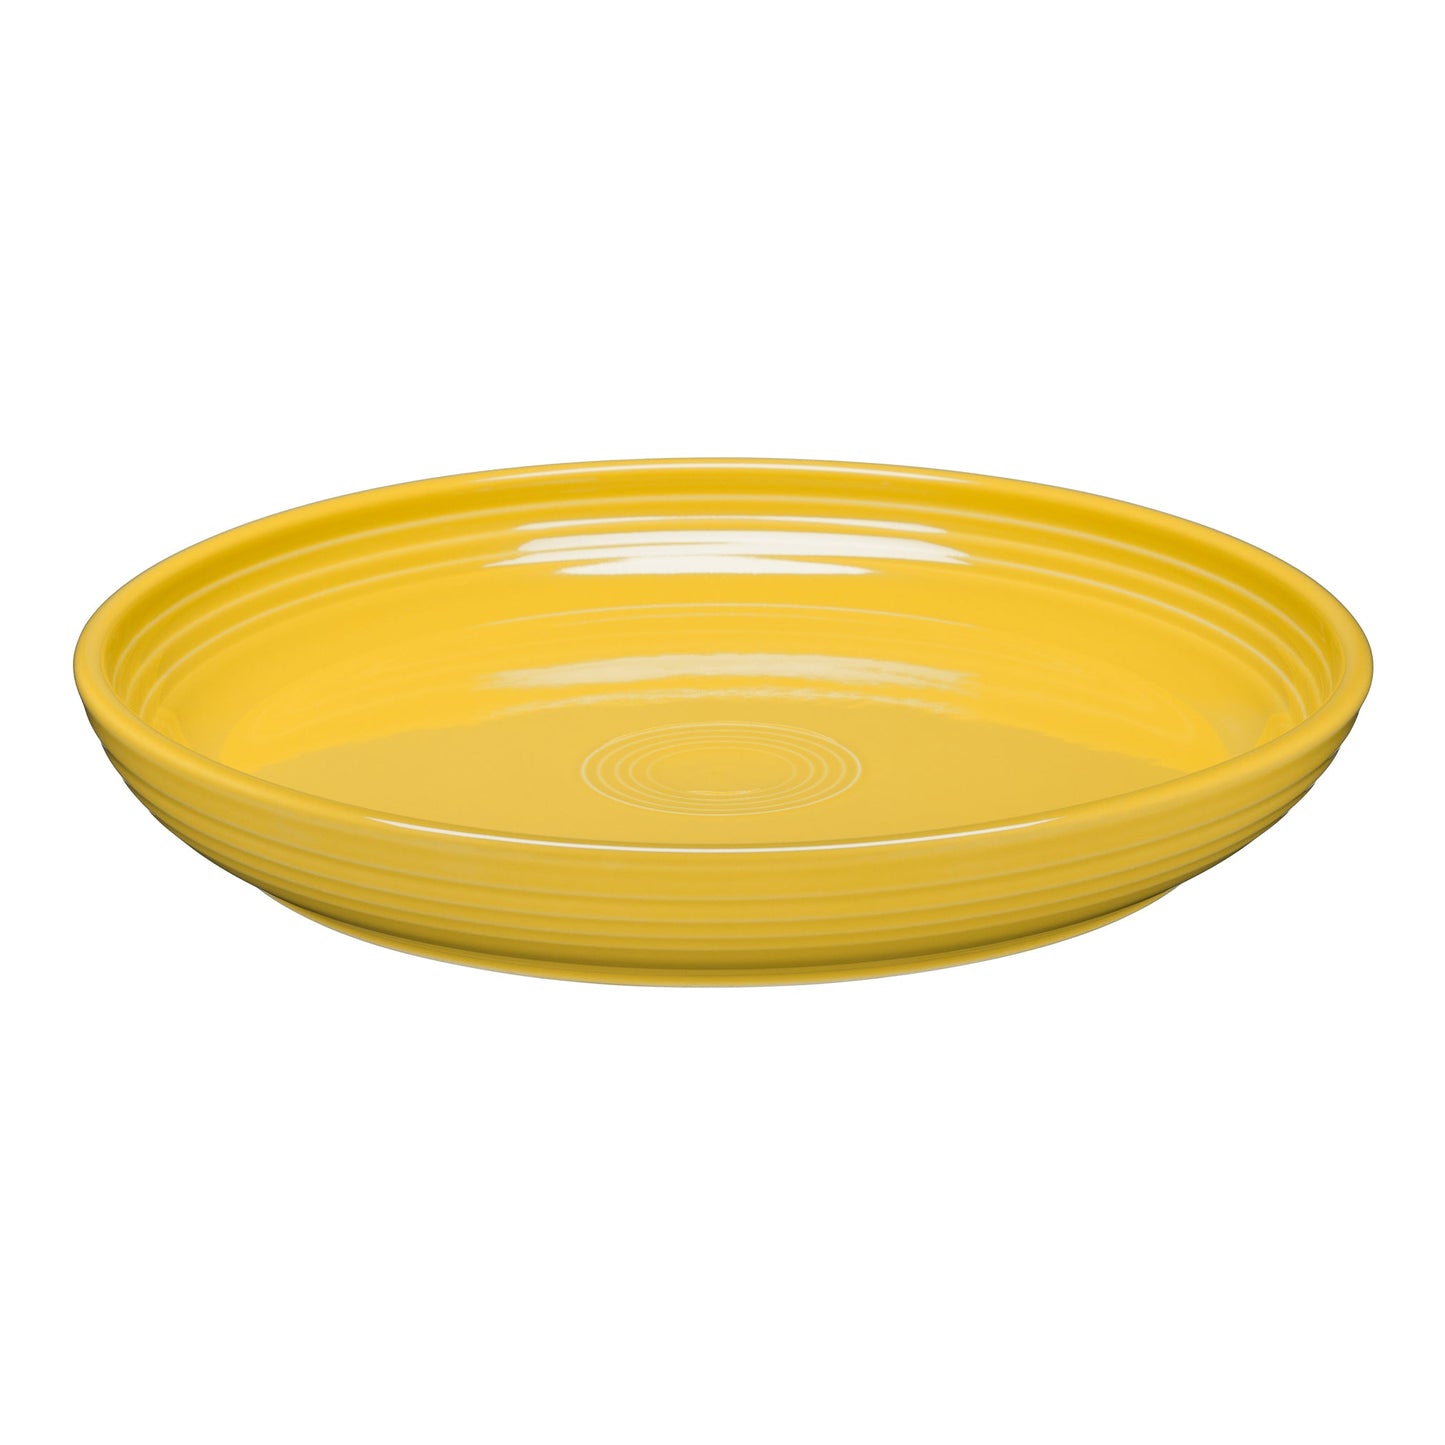 10 3/8" Dinner Bowl Plate